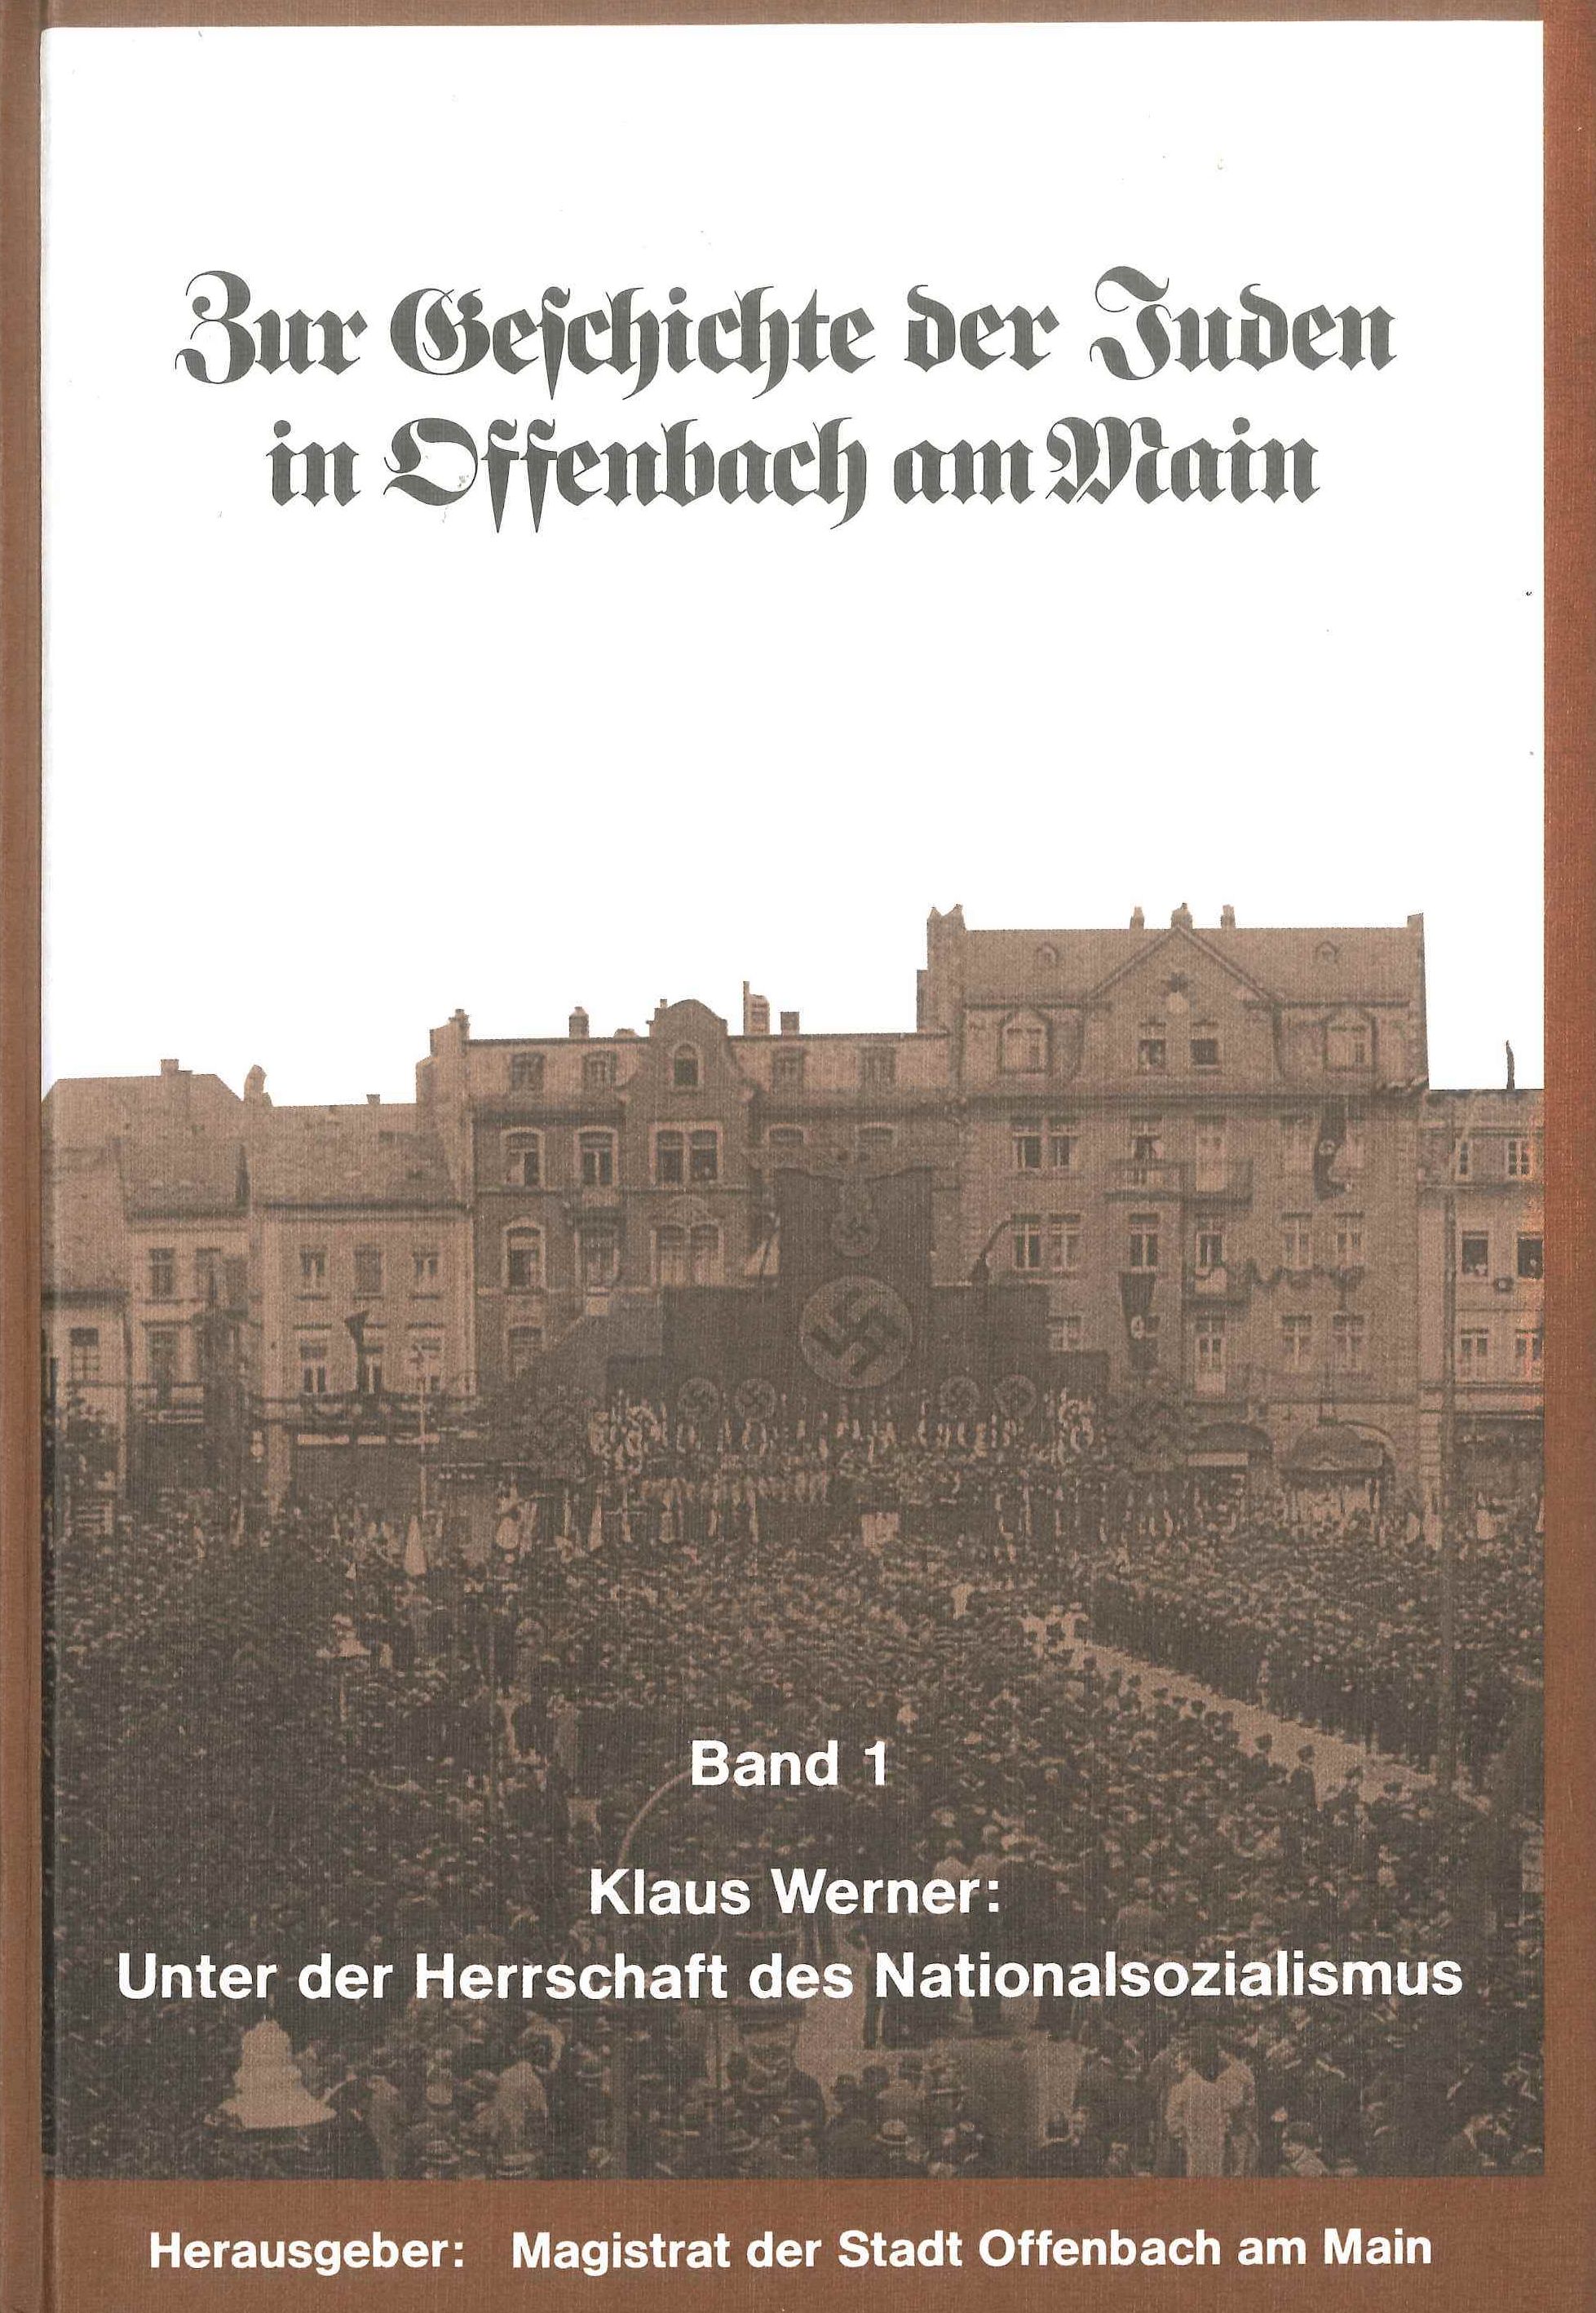 Autor: Klaus Werner
Unter der Herrschaft des Nationalsozialismus 1933-1945